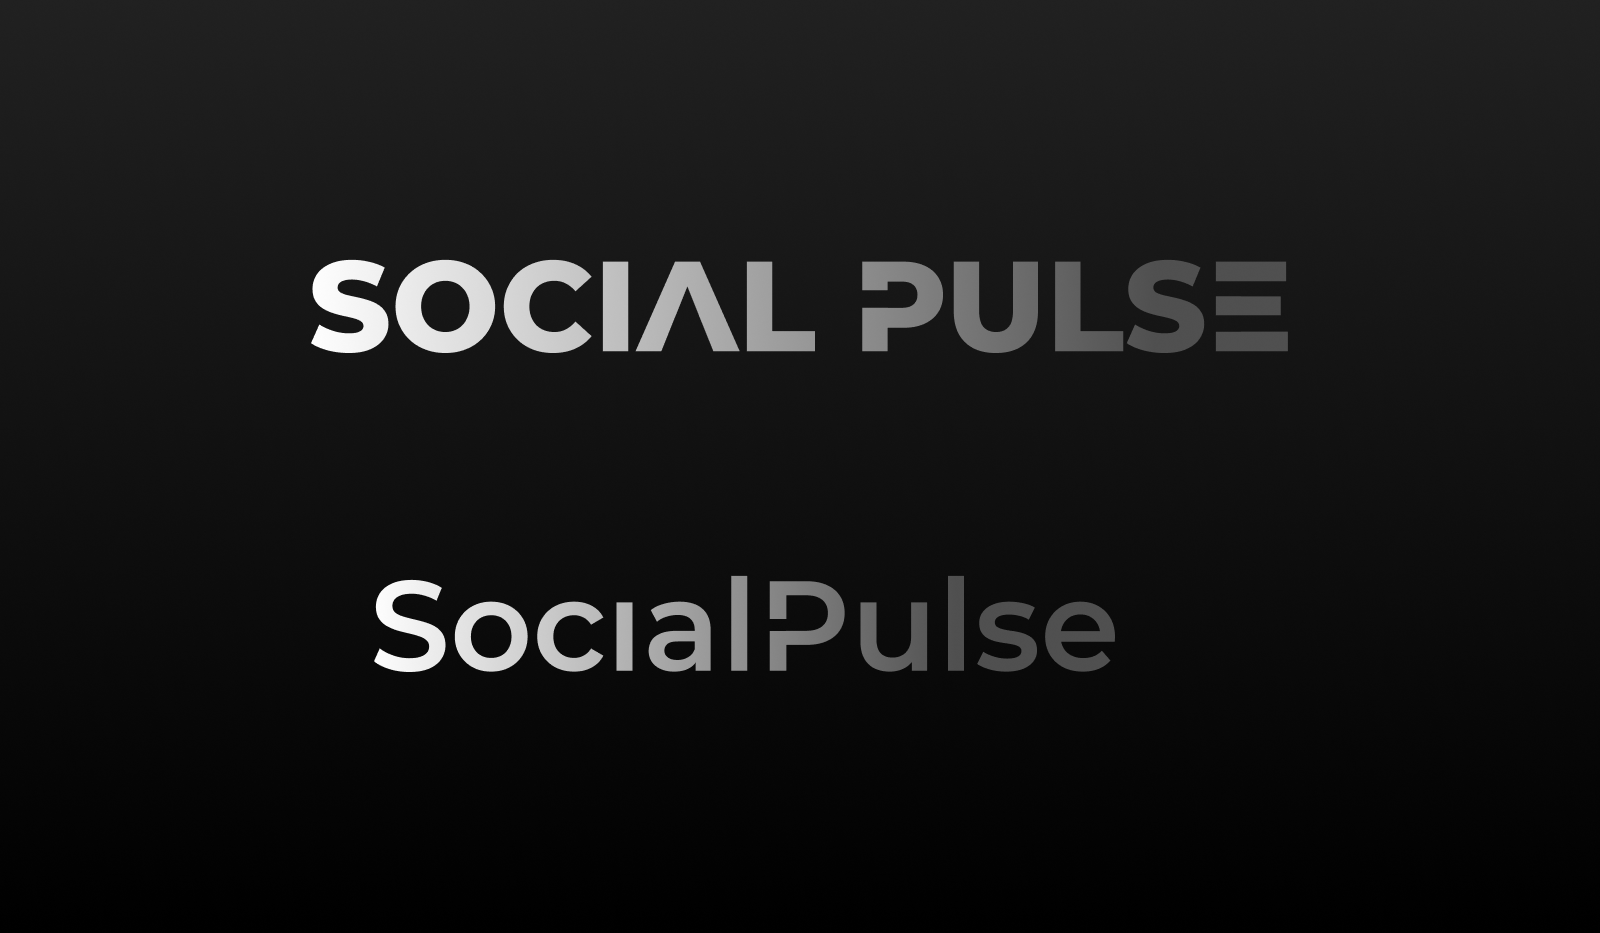 Social Pulse - A design sharing app - logo design by Luke Smith Design on Dribbble